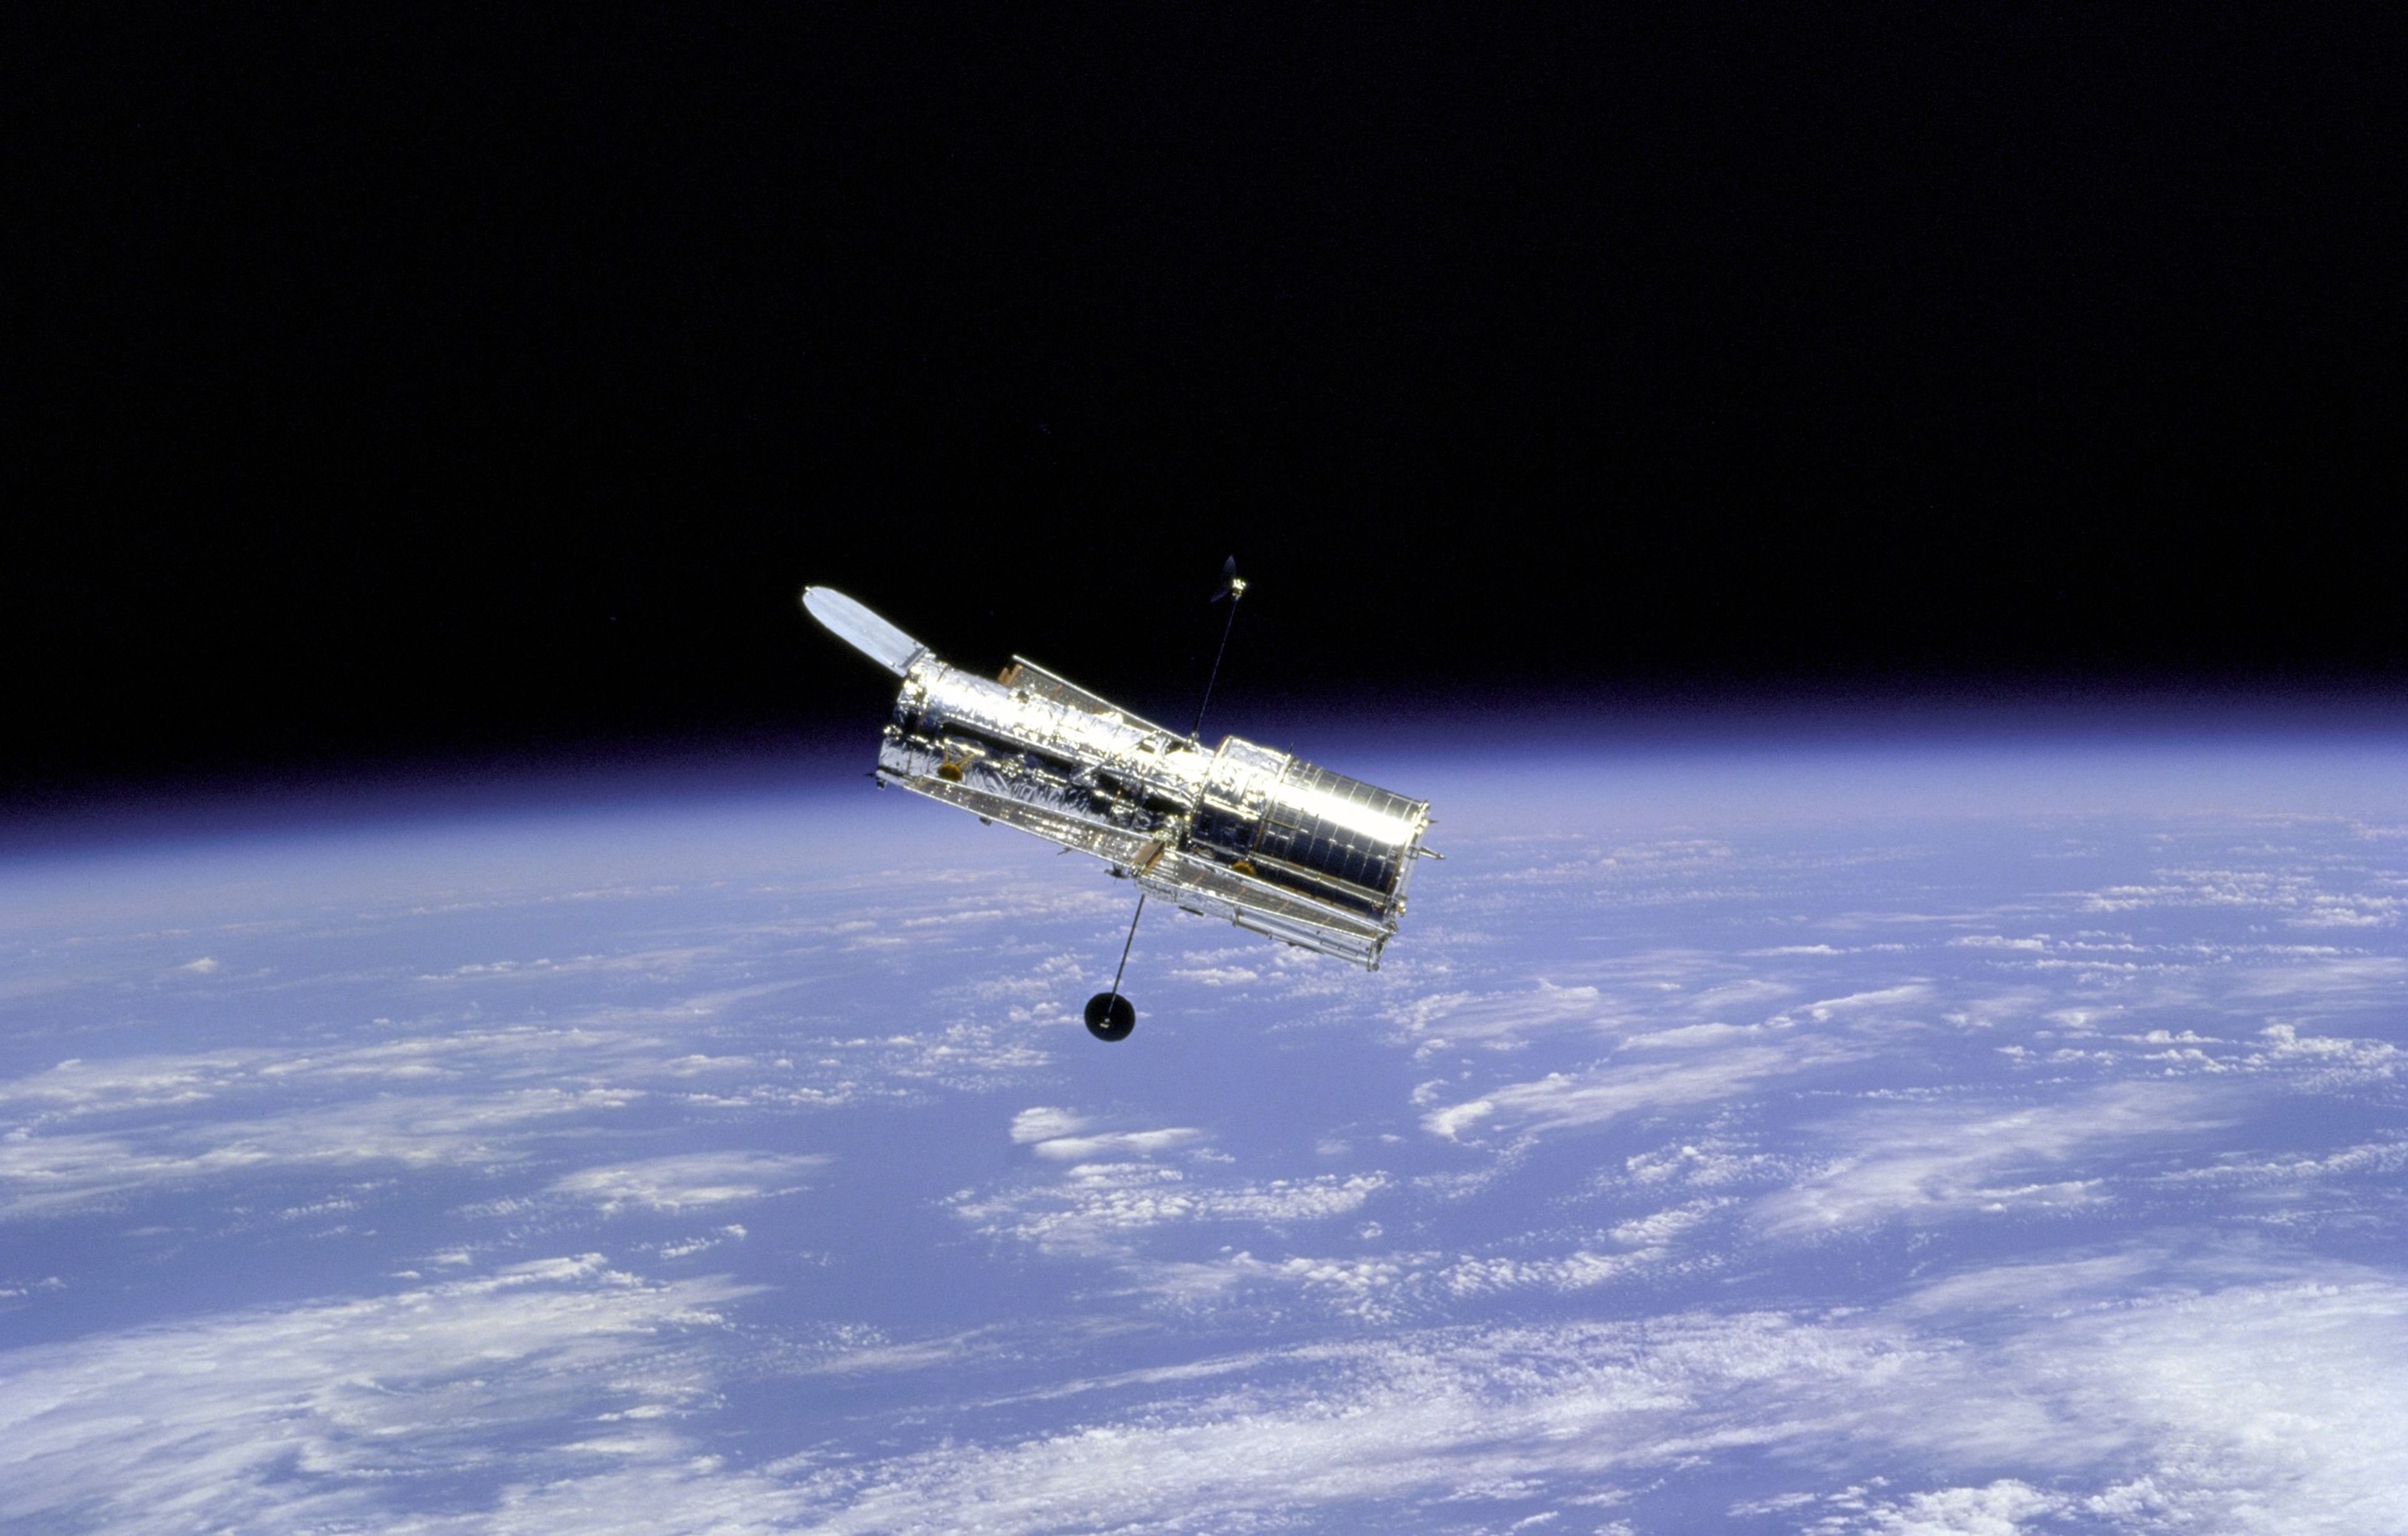 imagen tomada por la NASA del telescopio espacial Hubble